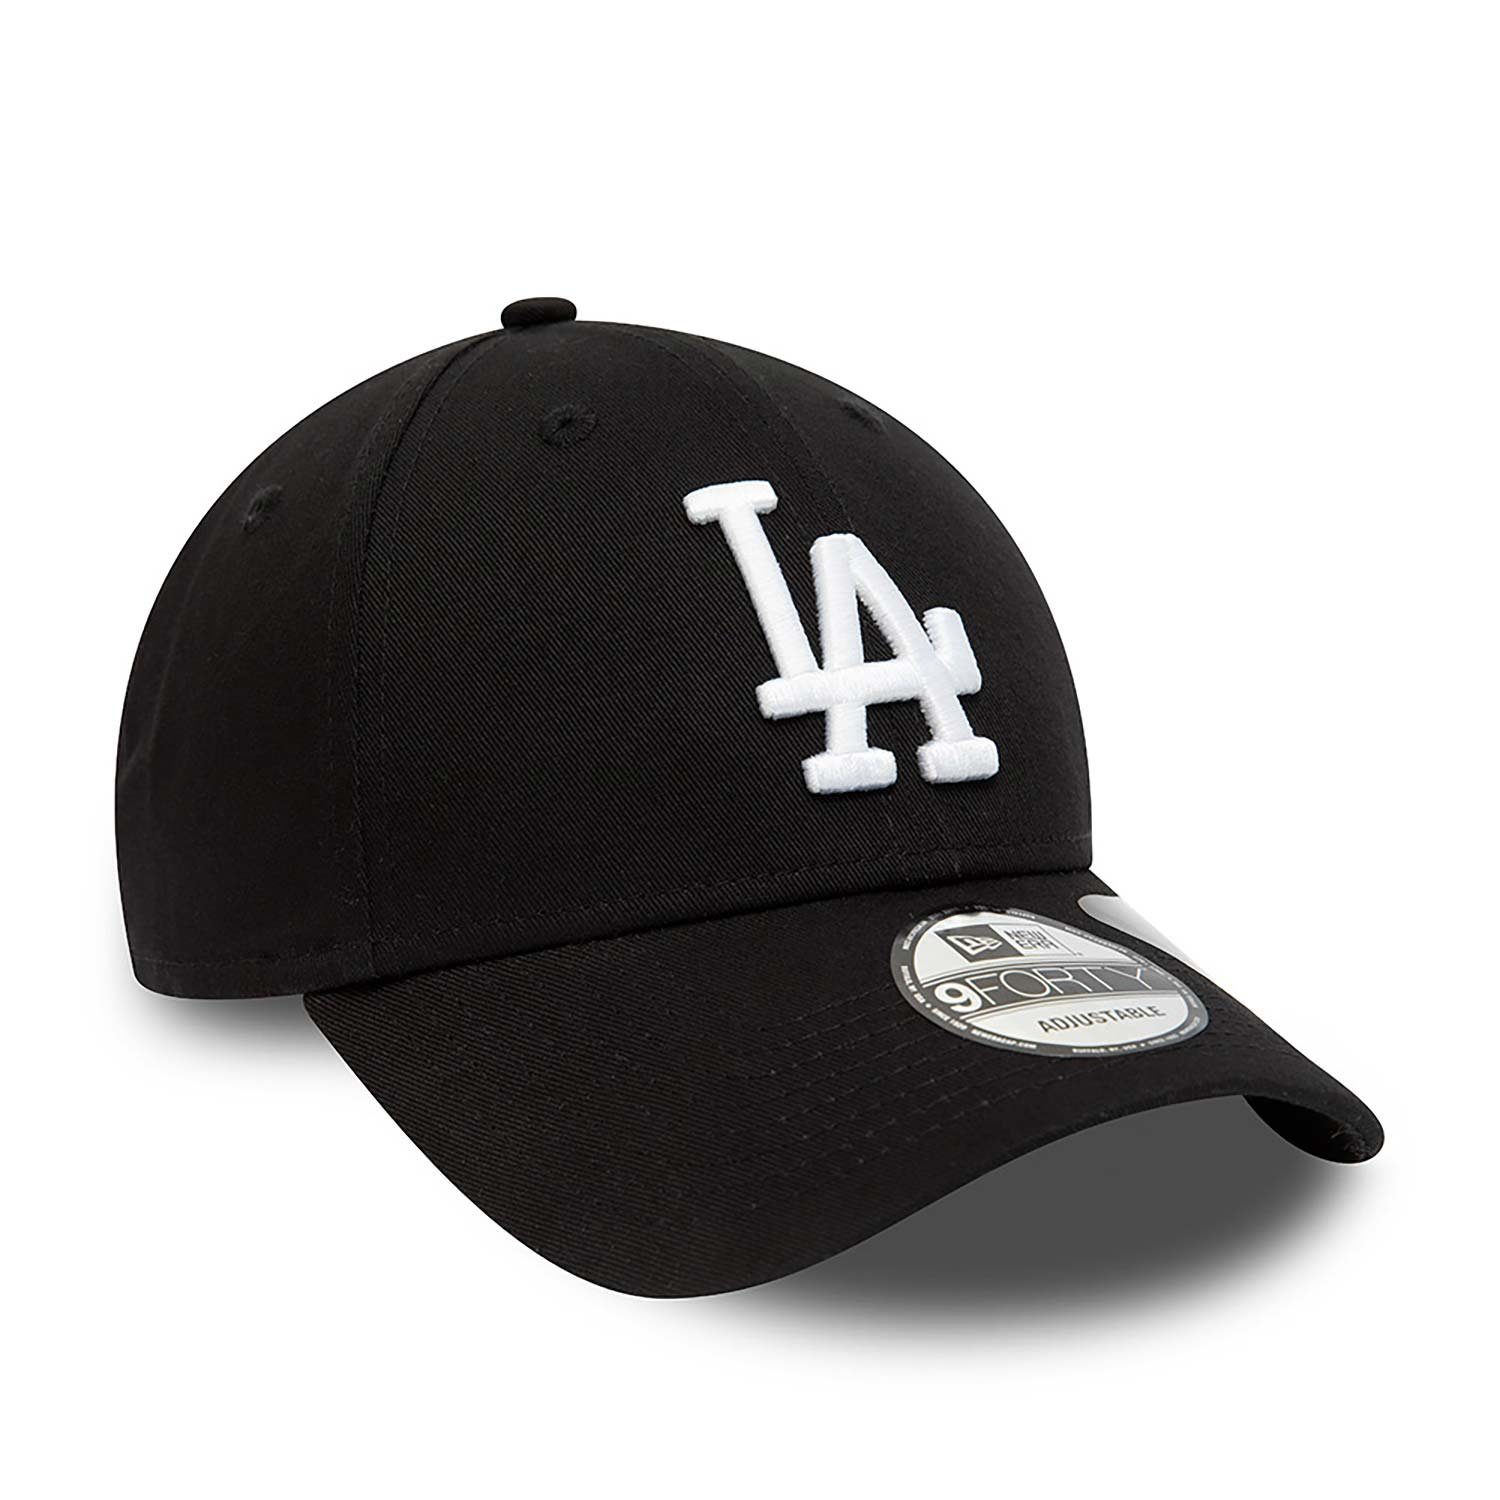 New LA Baseball Cap Era Dodgers